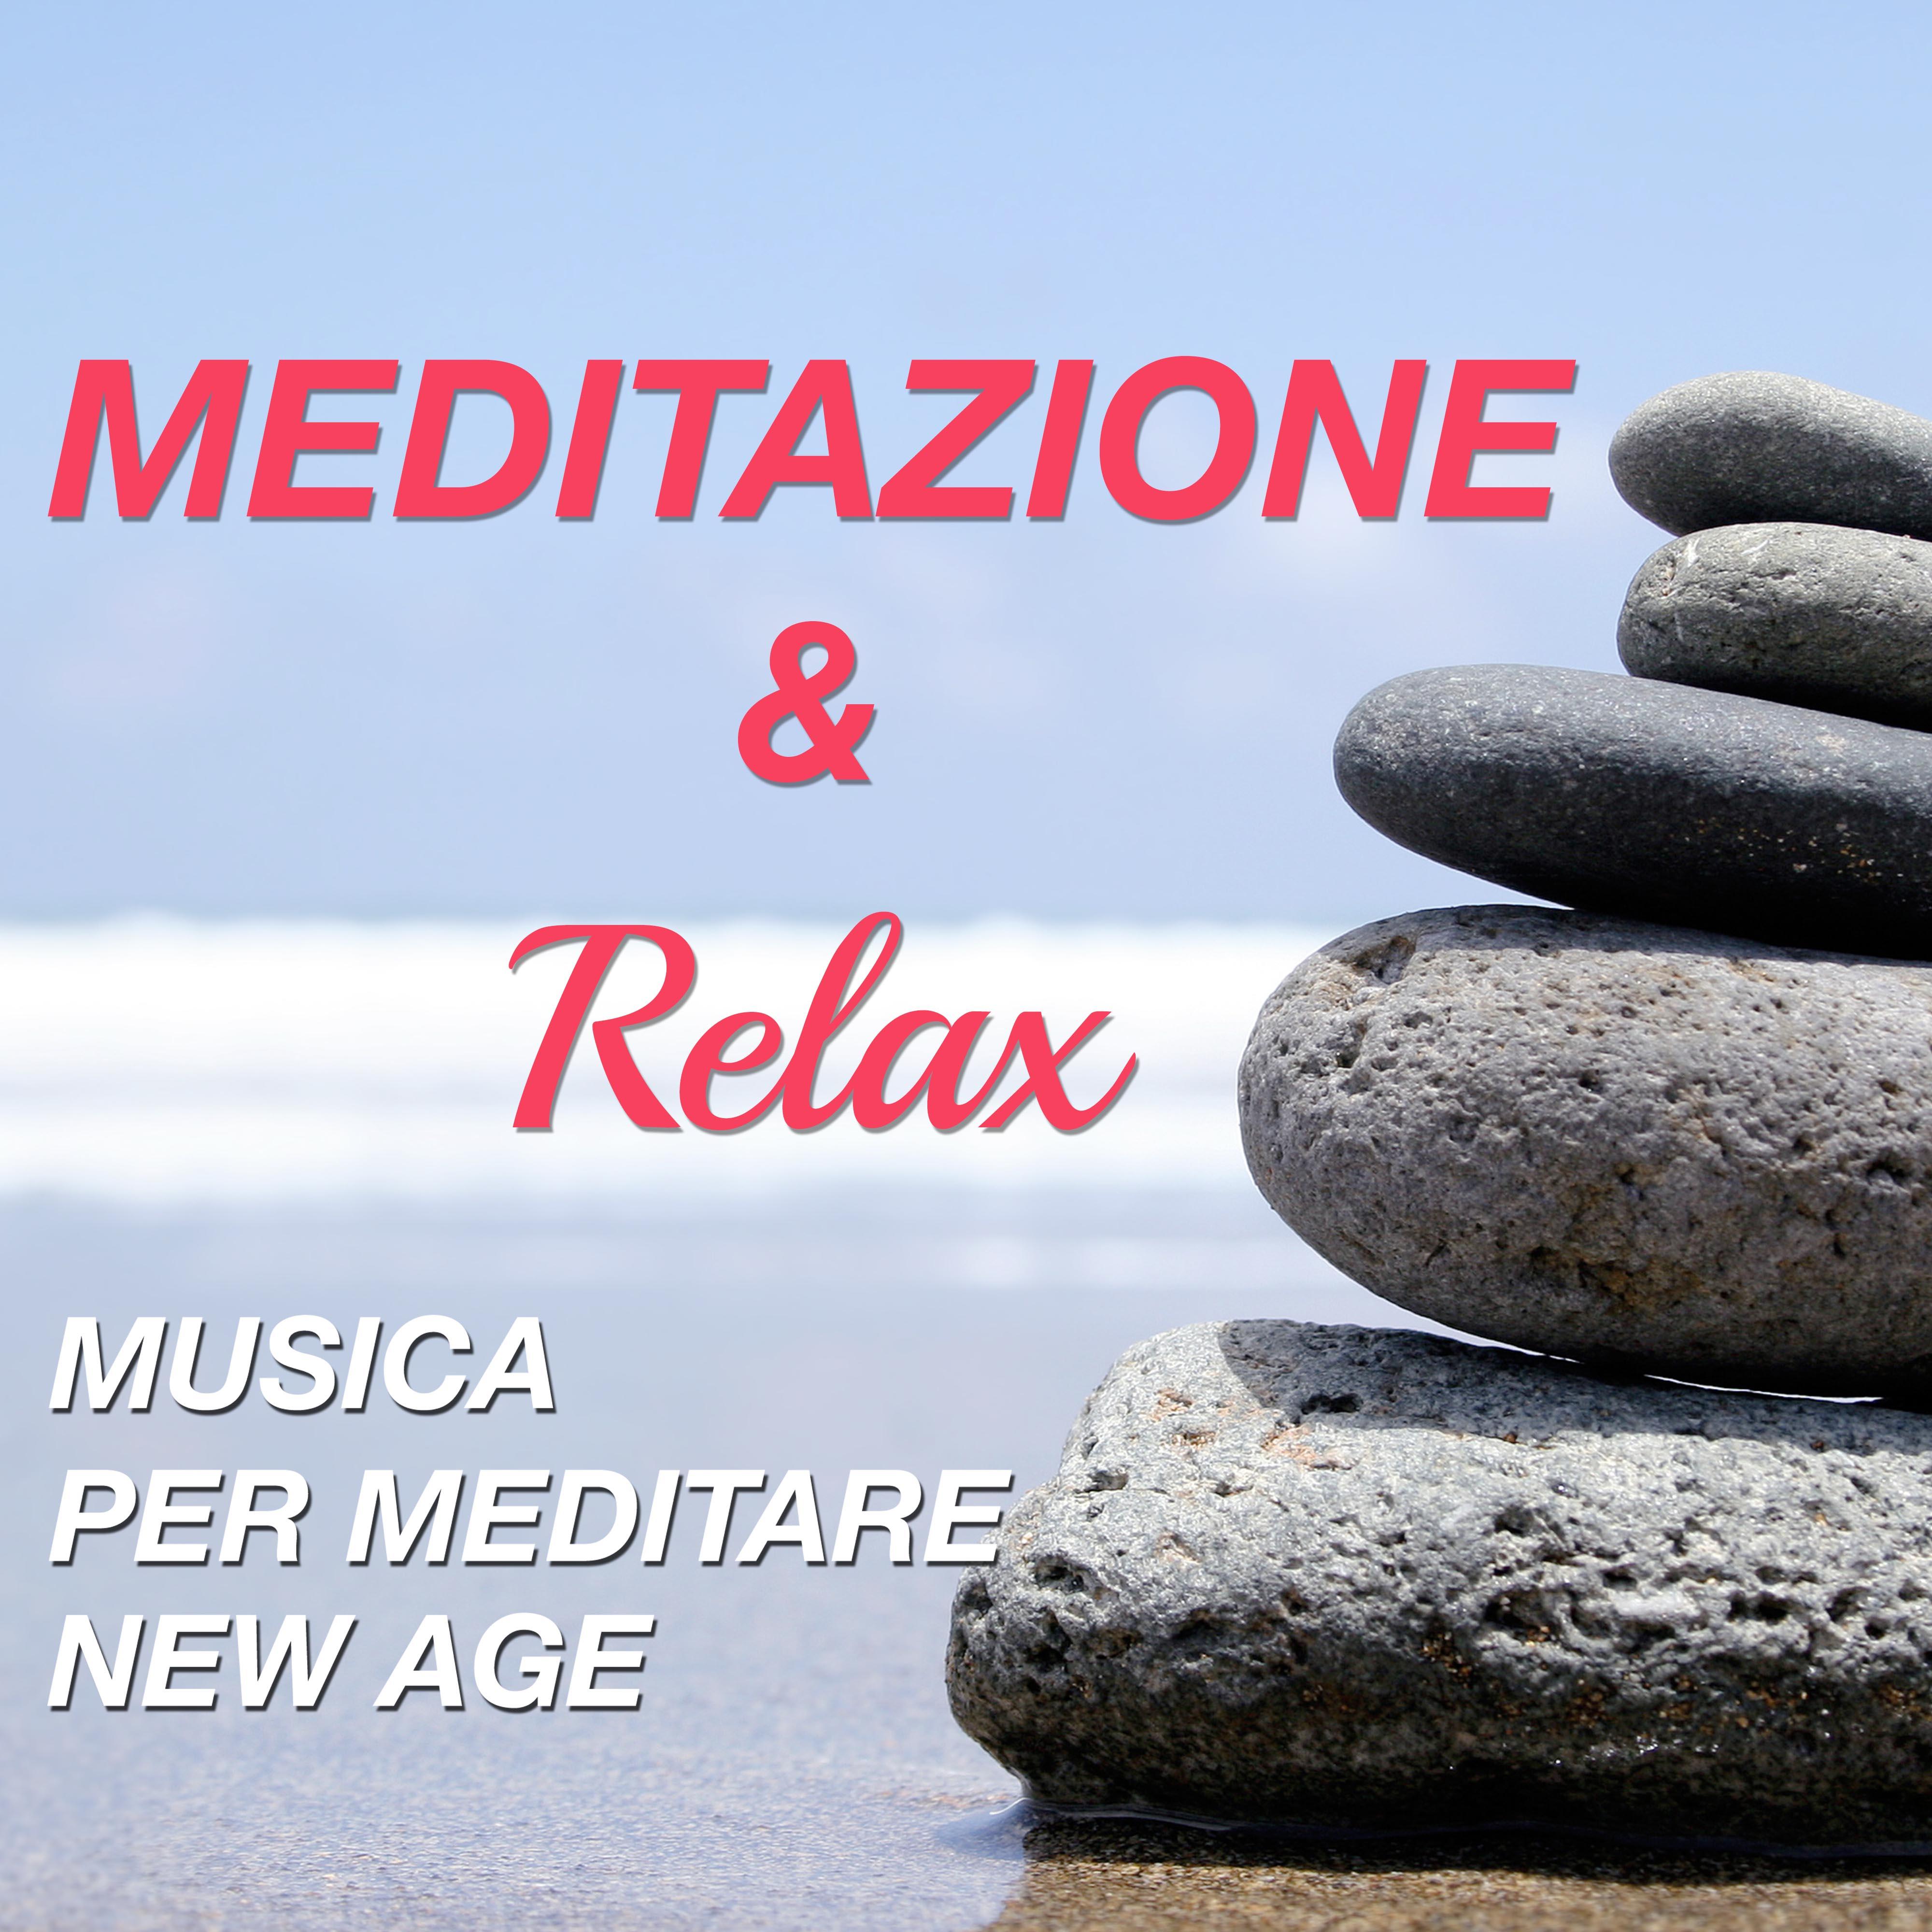 Meditazione & Relax - Musica per Meditare New Age per la Pace Interiore, la Serenità e la Tranquillità